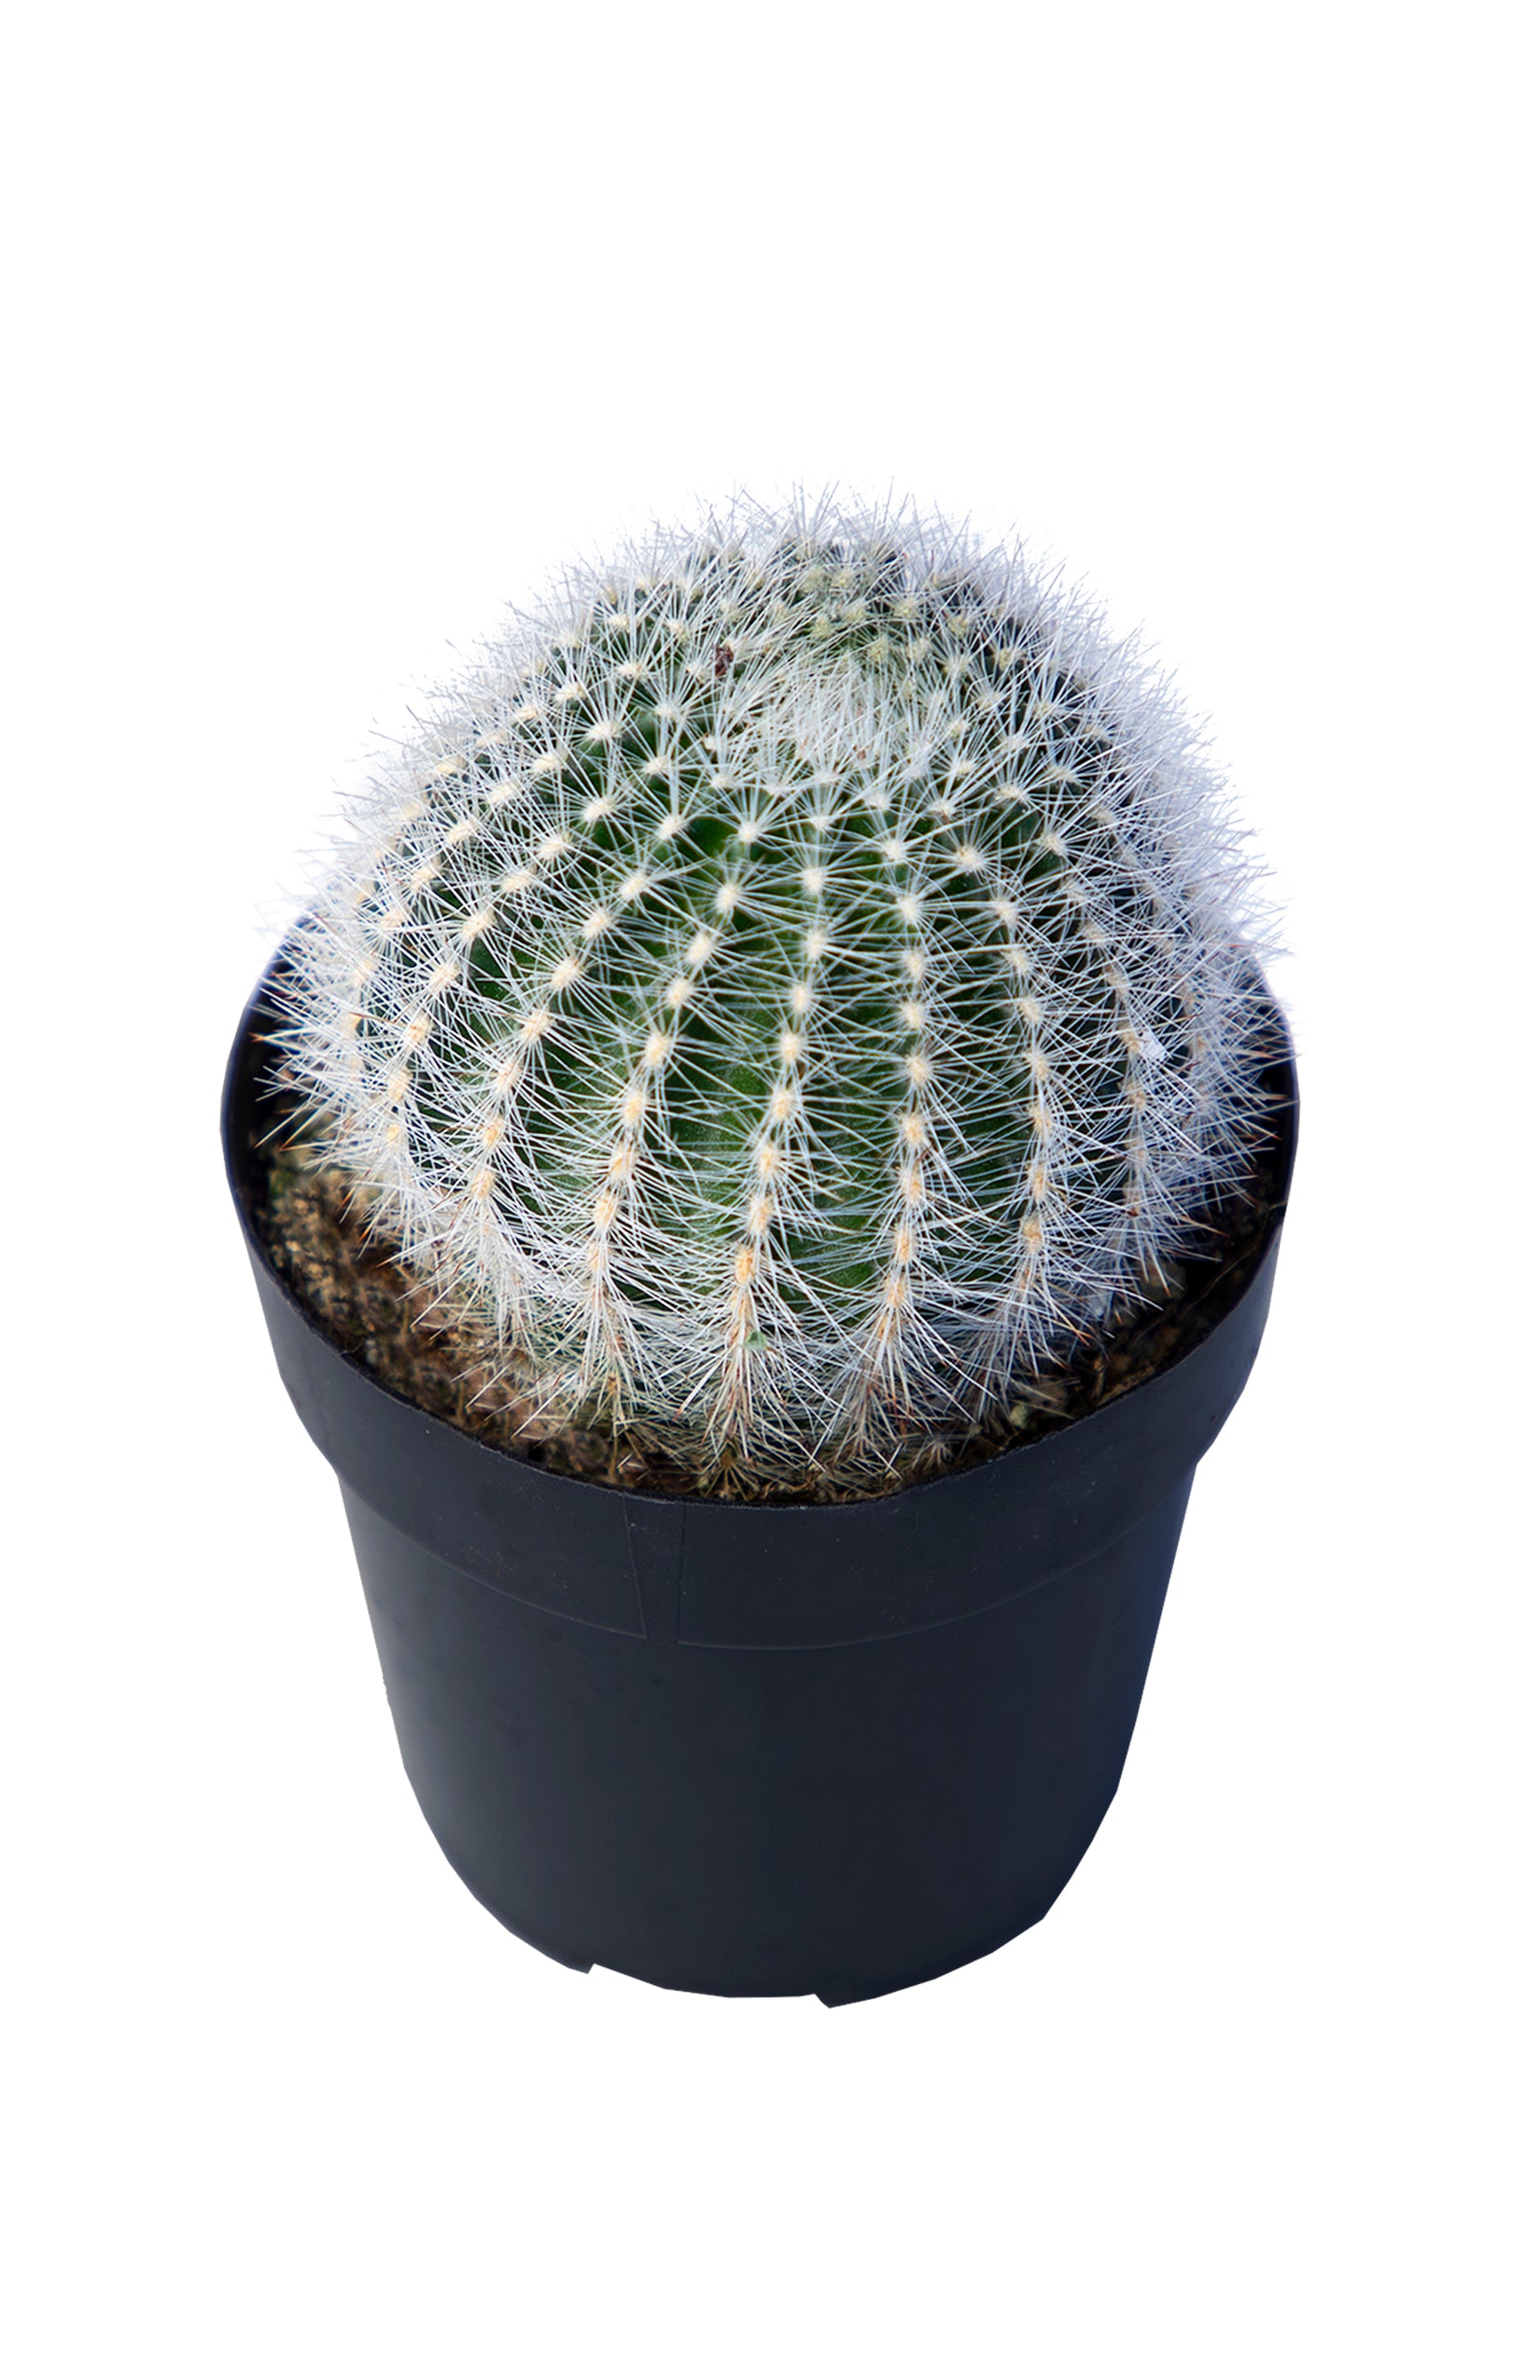 Echinopsis leucomalla "Cob Cactus"